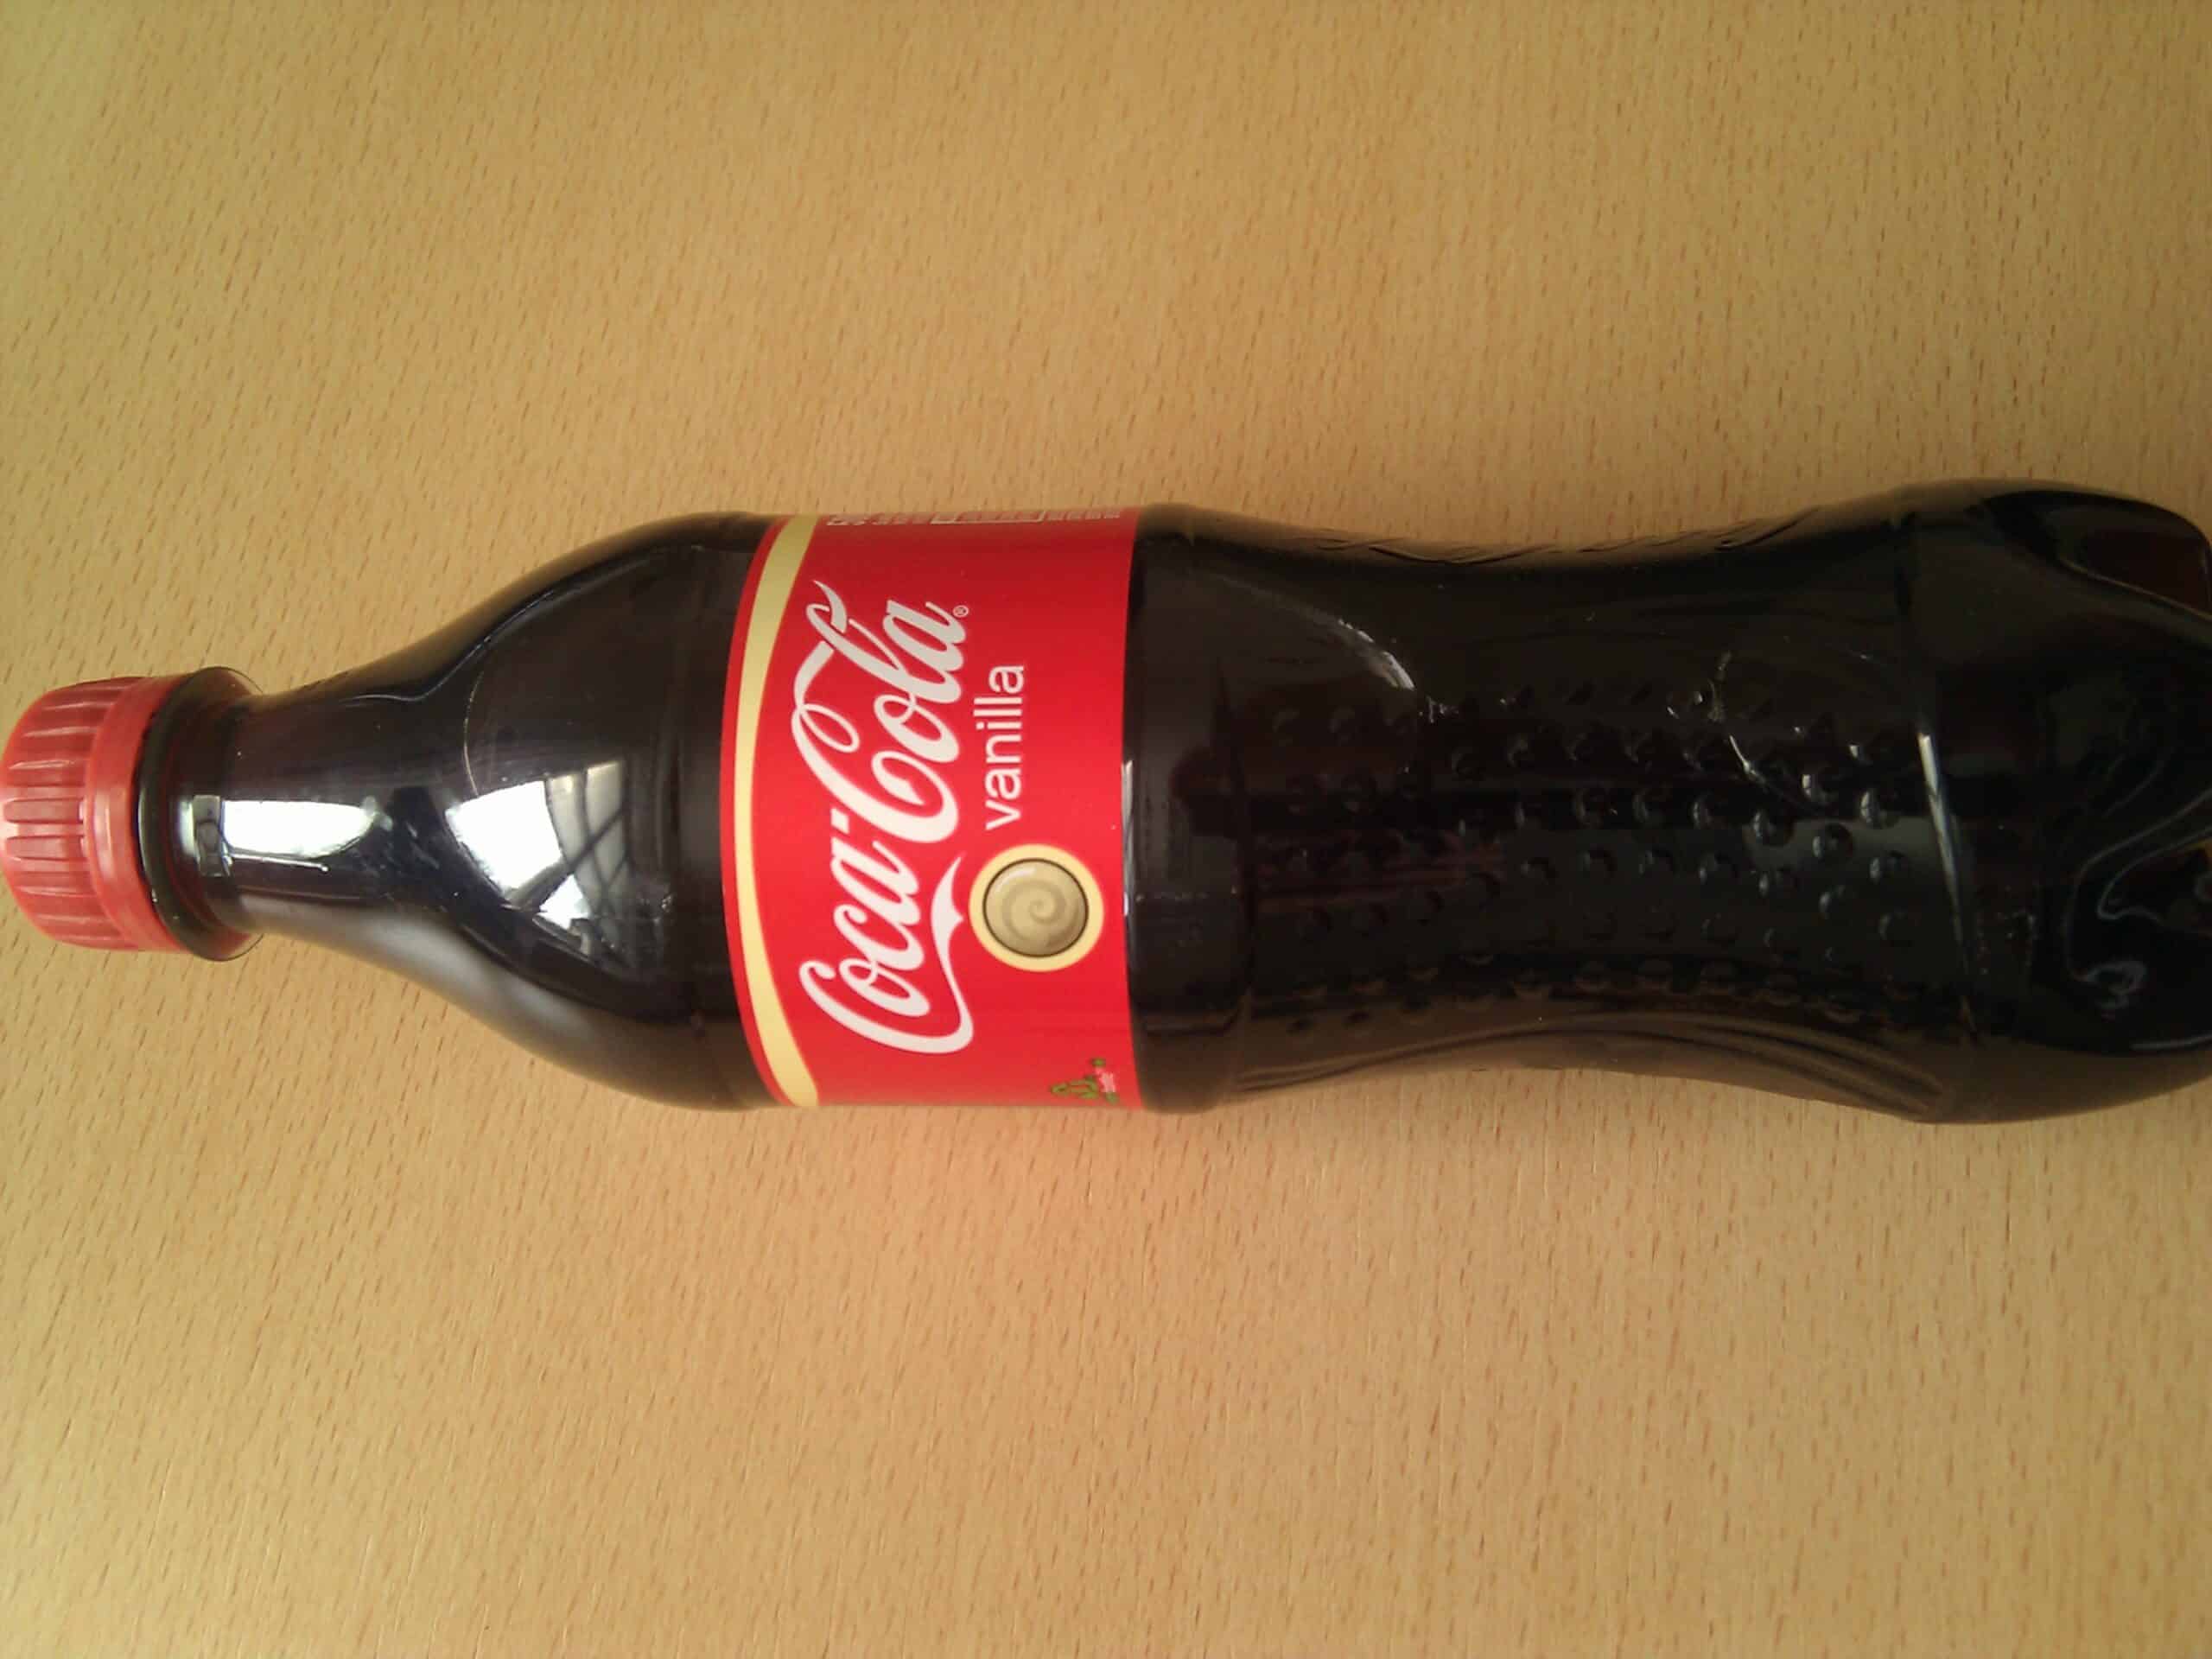 Coca cola vanilla by osde8info